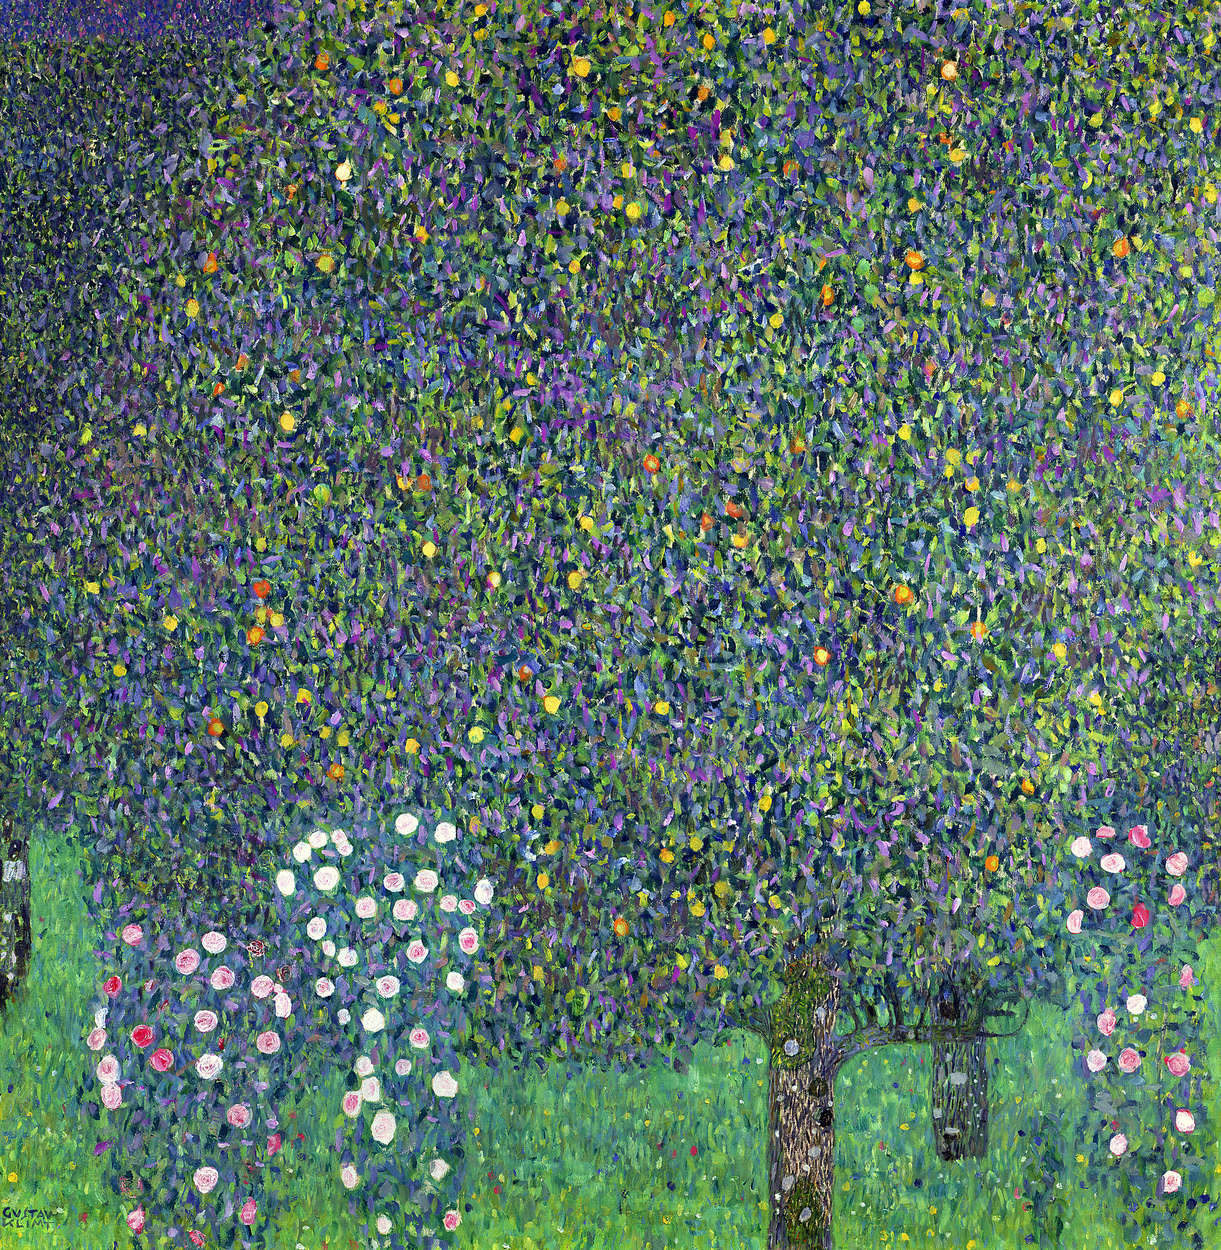             Fototapete "Rosen unter den Bäumen" von Gustav Klimt
        